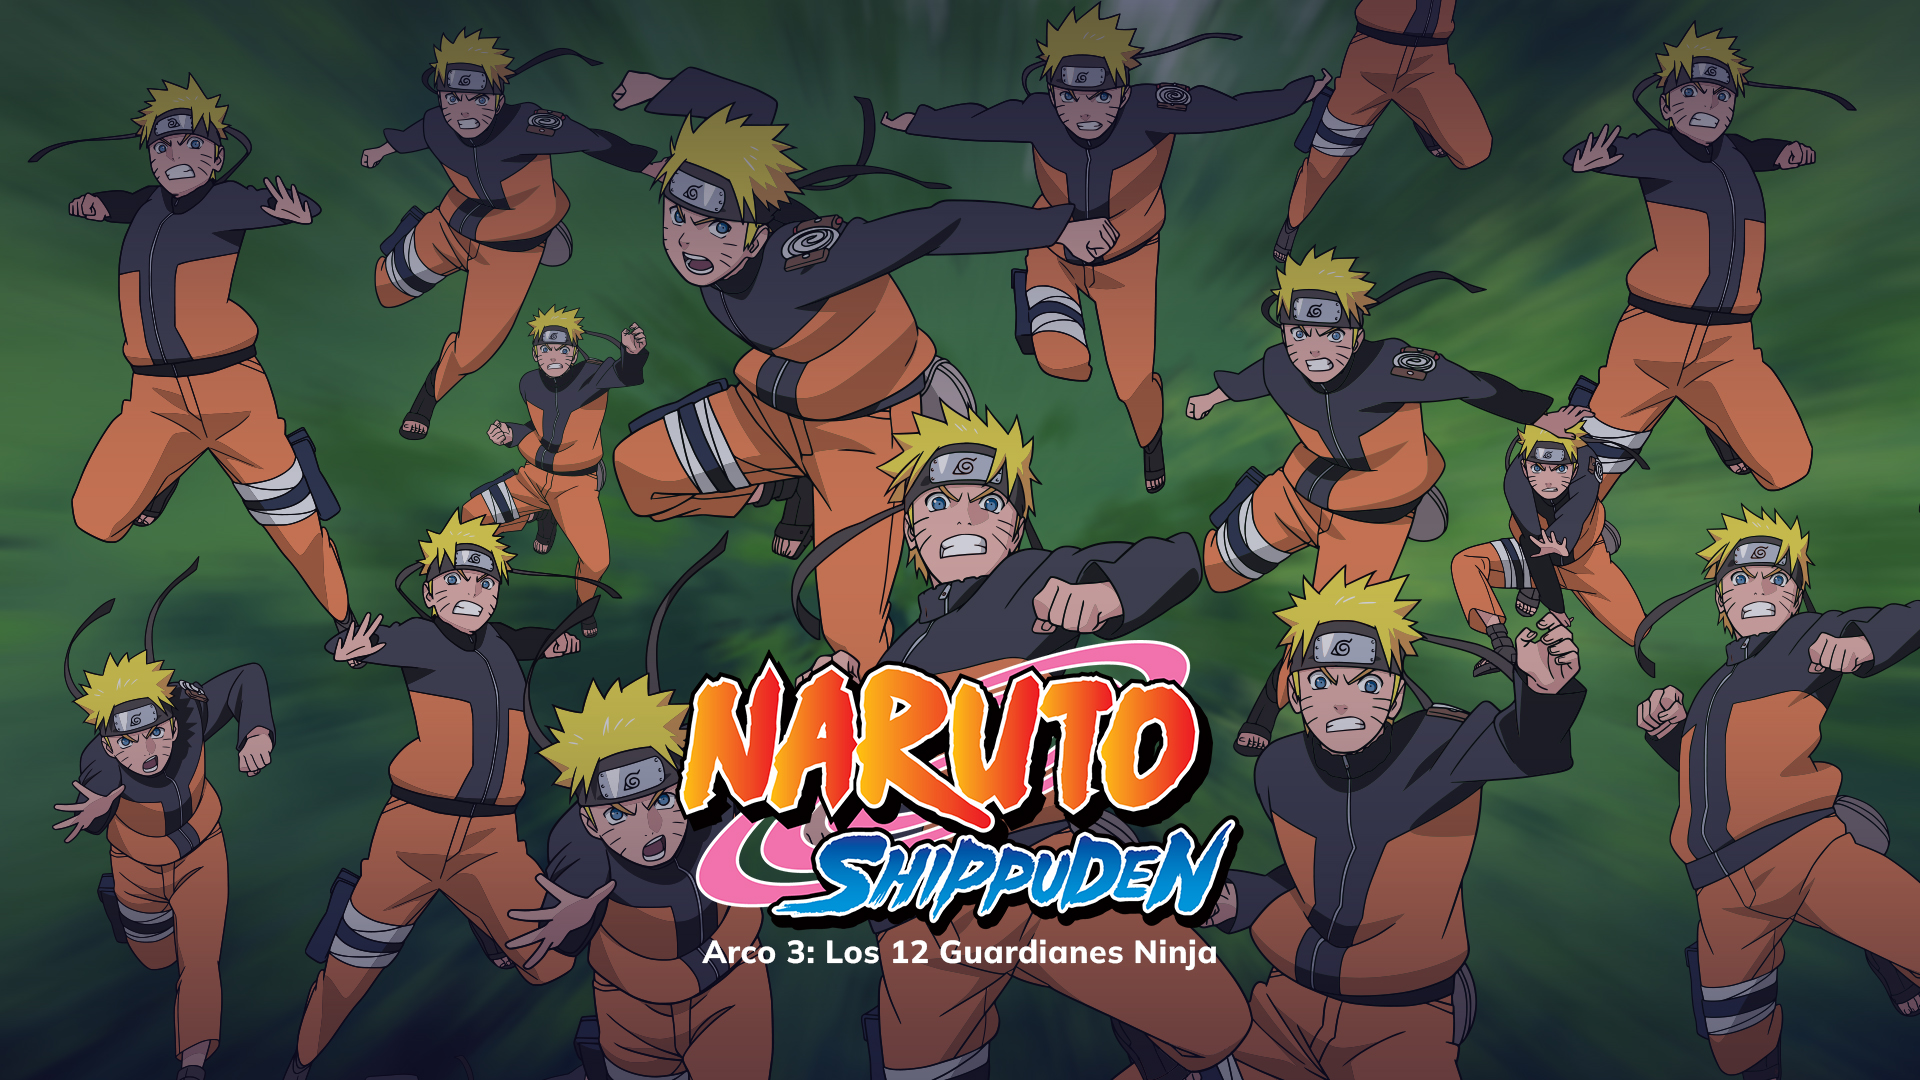 Revelada imagem promocional para o próximo arco de Naruto Shippuuden -  Crunchyroll Notícias